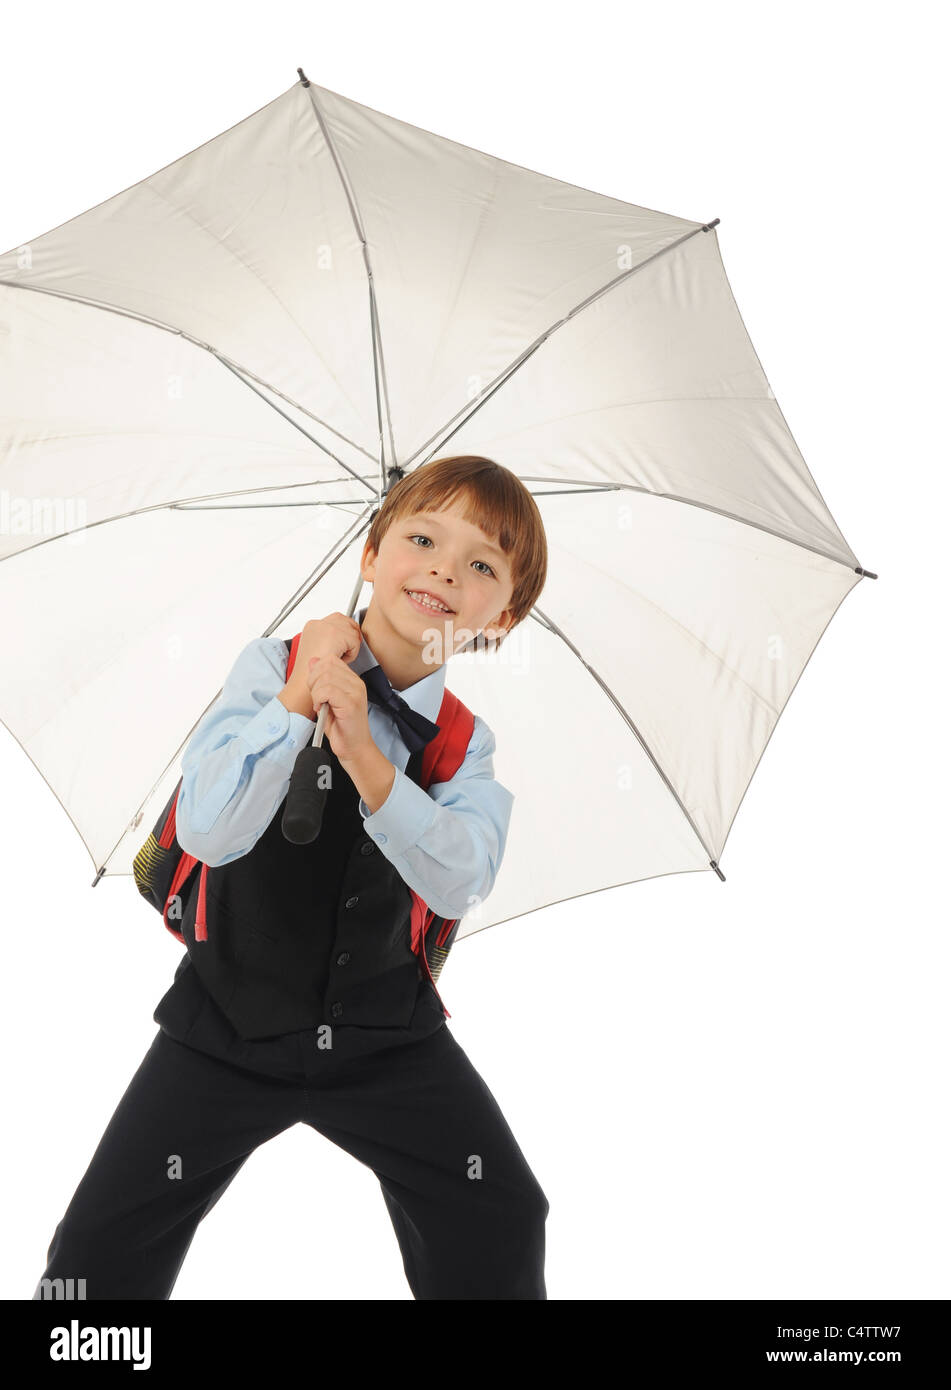 Schoolboy with a umbrella. Stock Photo